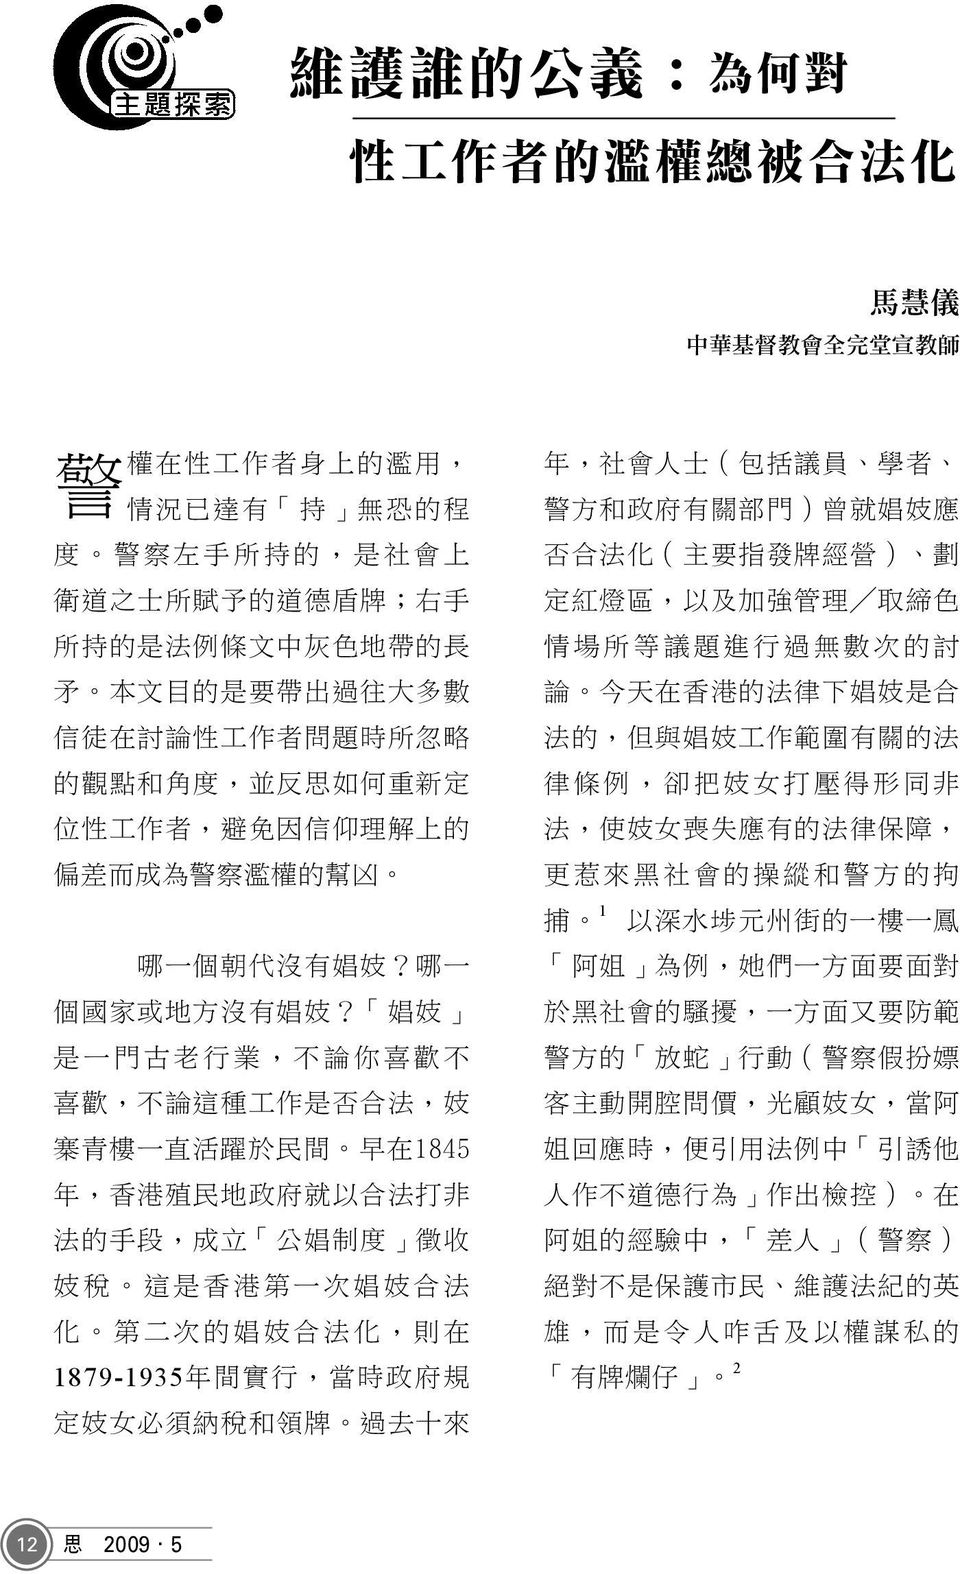 娼 妓 是 一 門 古 老 行 業, 不 論 你 喜 歡 不 喜 歡, 不 論 這 種 工 作 是 否 合 法, 妓 寨 青 樓 一 直 活 躍 於 民 間 早 在 1845 年, 香 港 殖 民 地 政 府 就 以 合 法 打 非 法 的 手 段, 成 立 公 娼 制 度 徵 收 妓 稅 這 是 香 港 第 一 次 娼 妓 合 法 化 第 二 次 的 娼 妓 合 法 化, 則 在